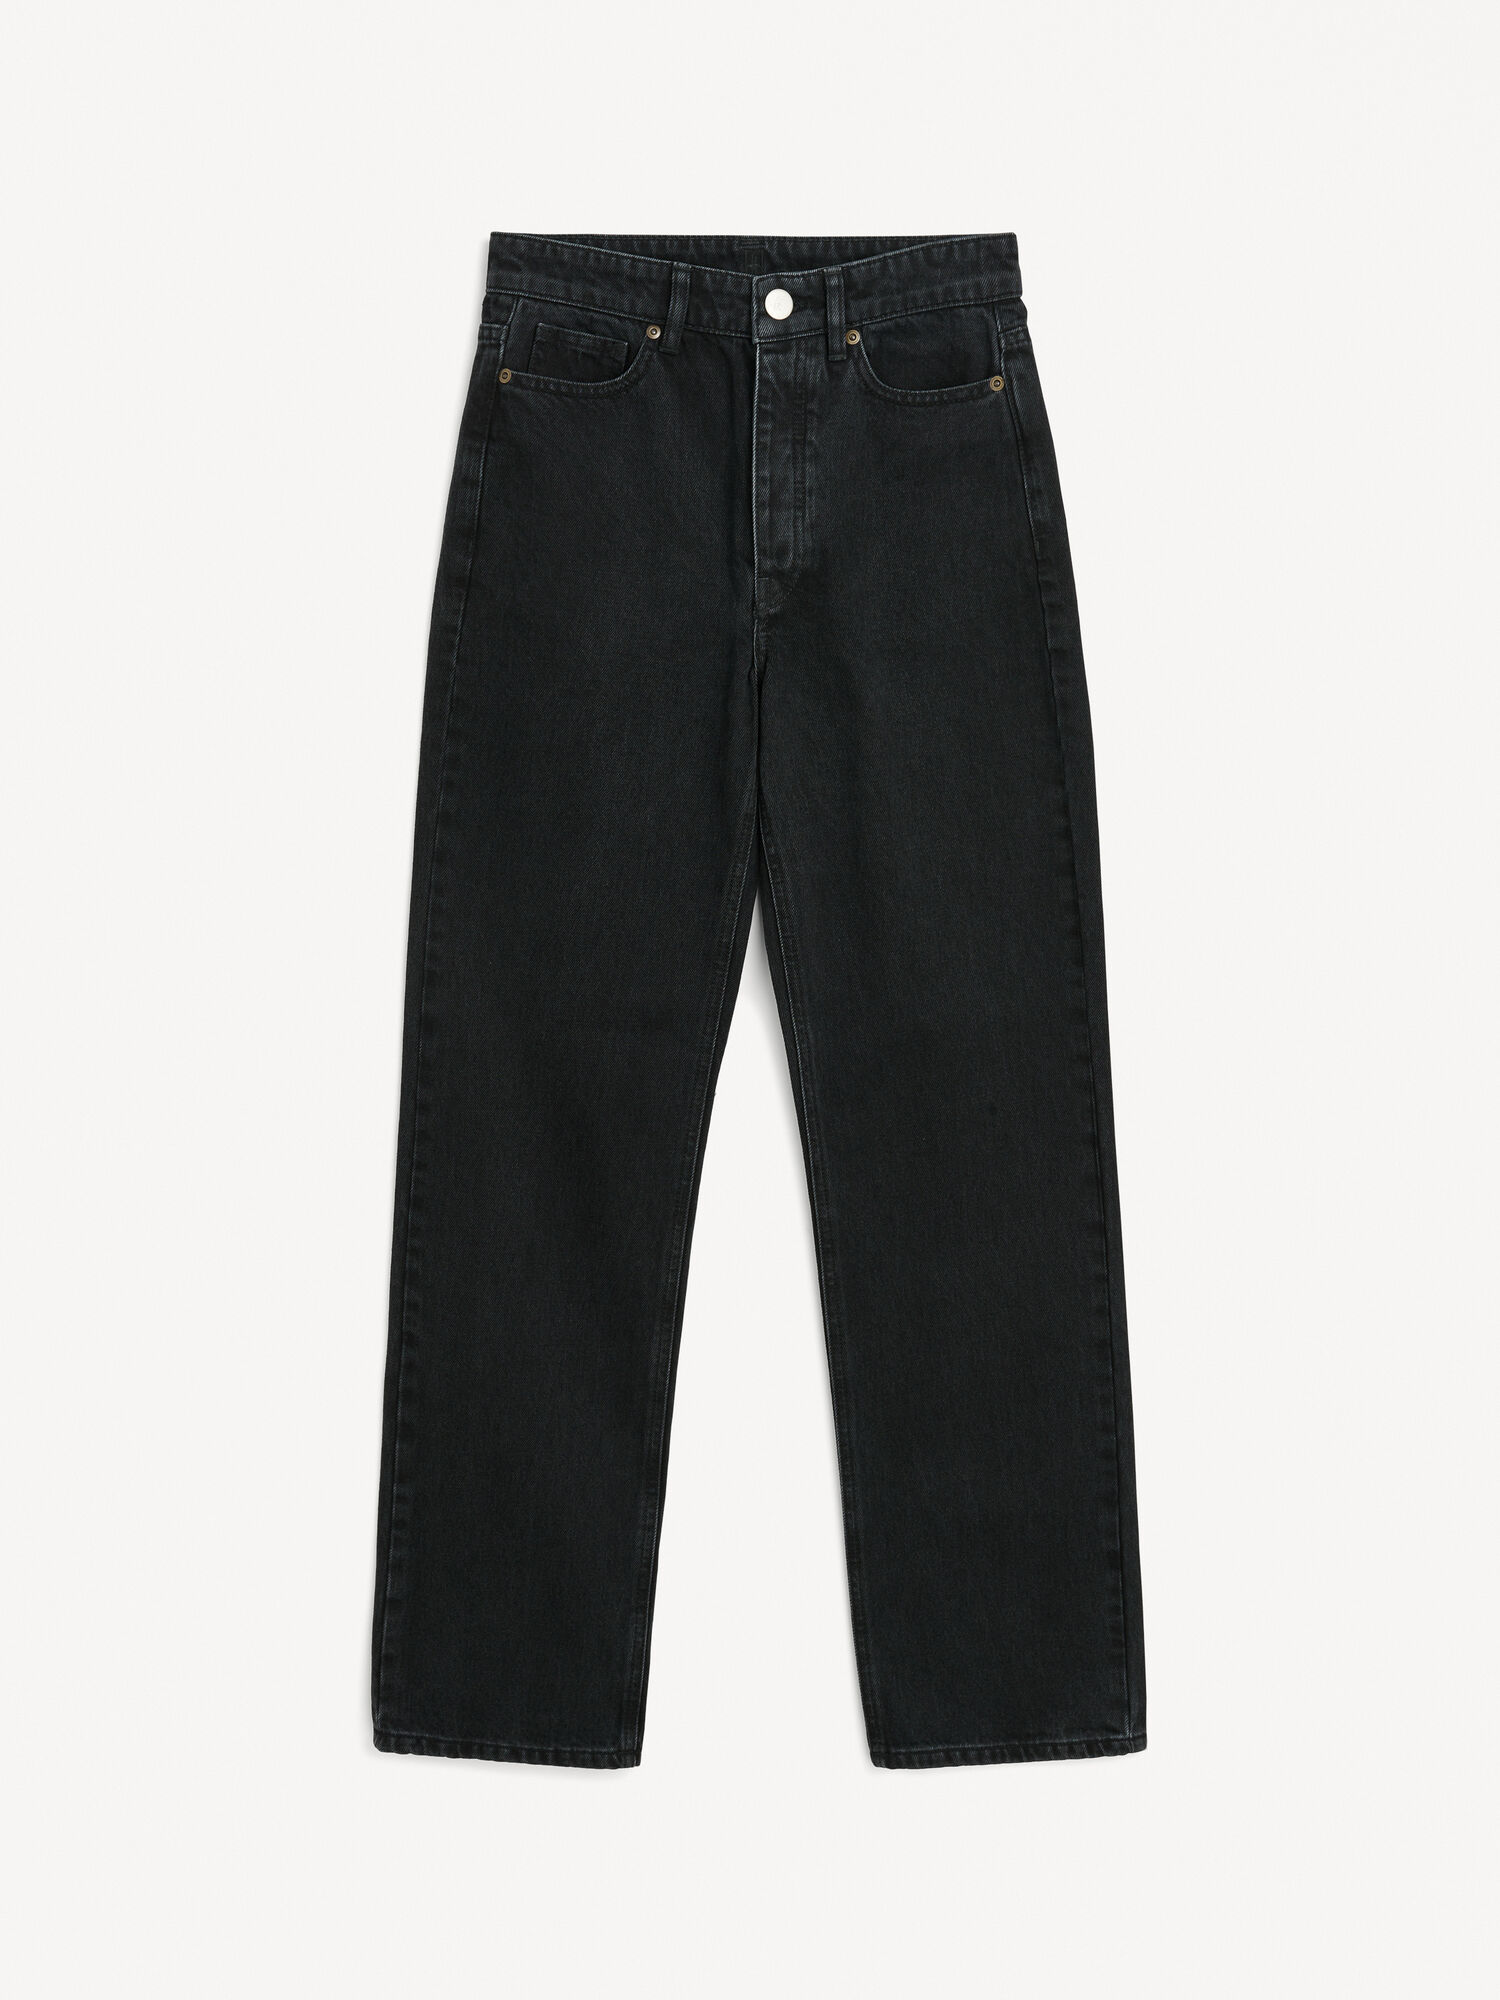 Miliumlo organic cotton jeans